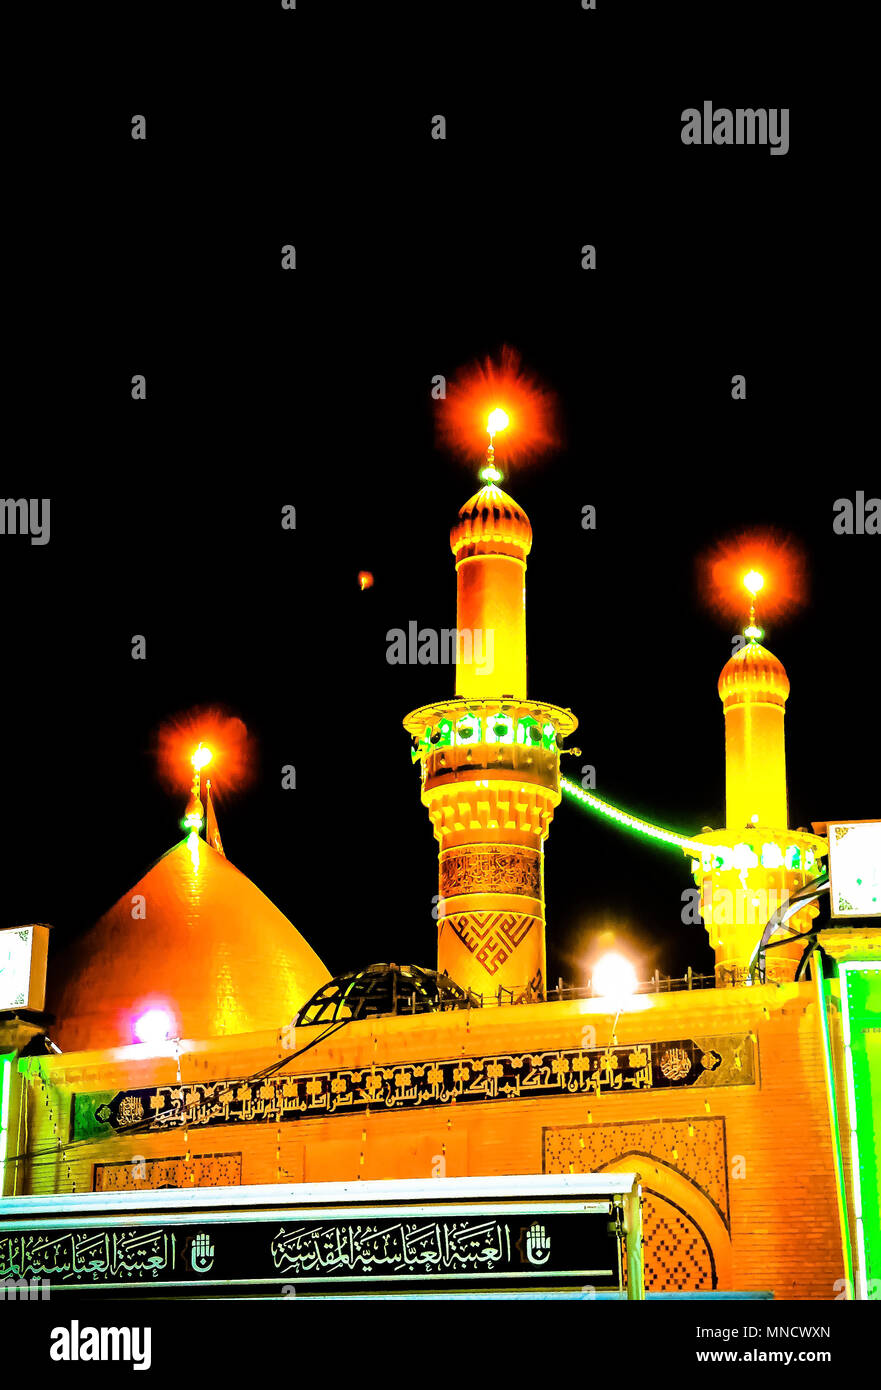 Shrine of Imam Hussain ibn Ali at night 01-11-2011 Karbala, Iraq ...